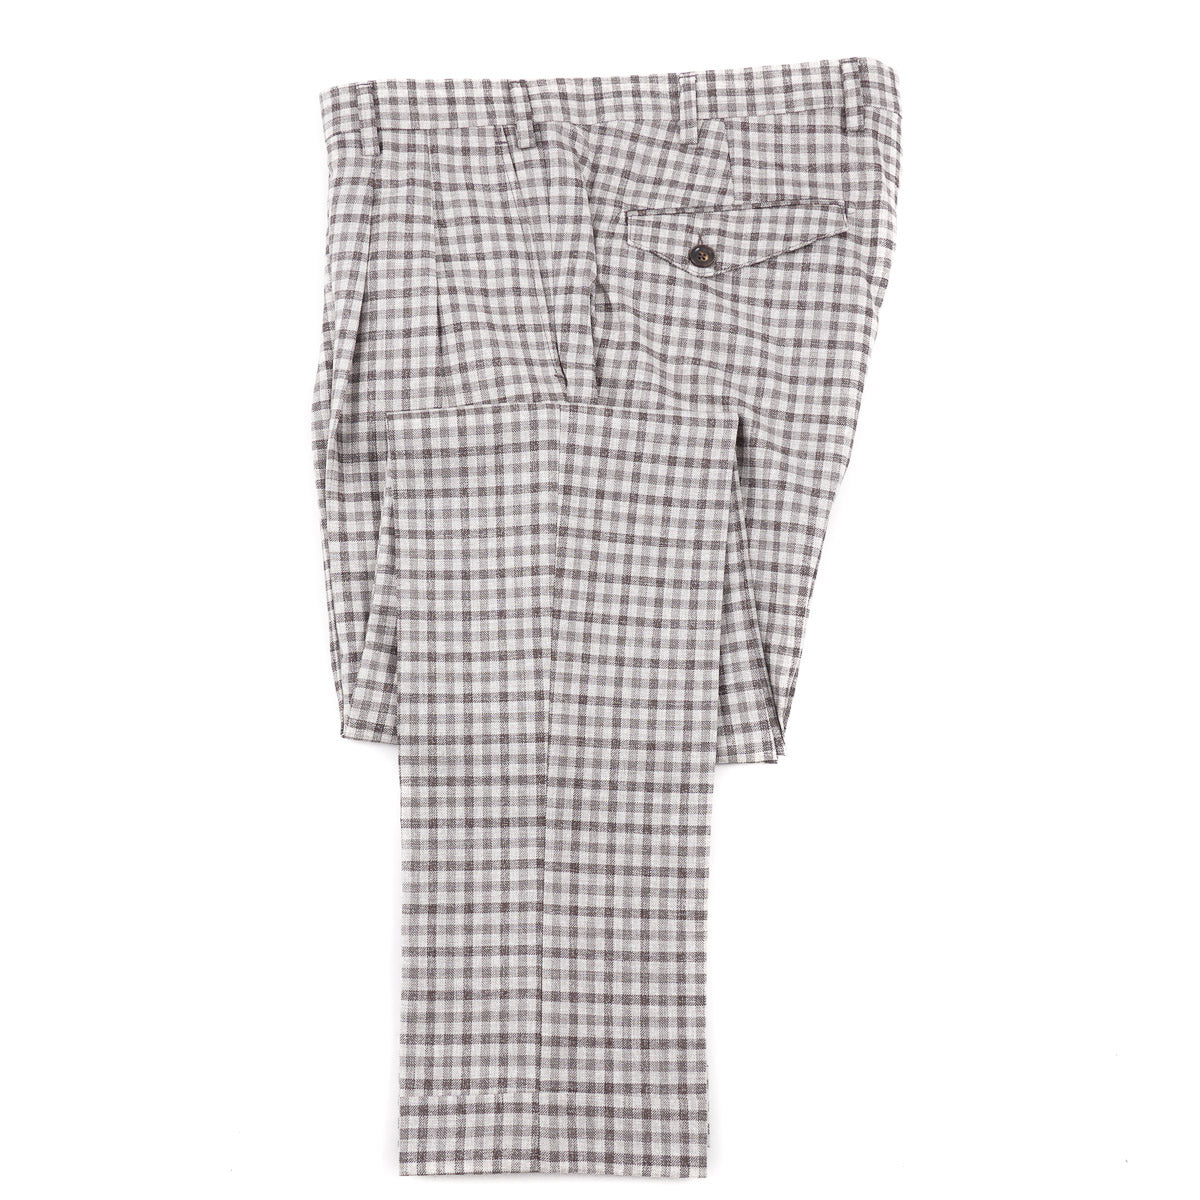 Marco Pescarolo Wool Dress Pants - Top Shelf Apparel